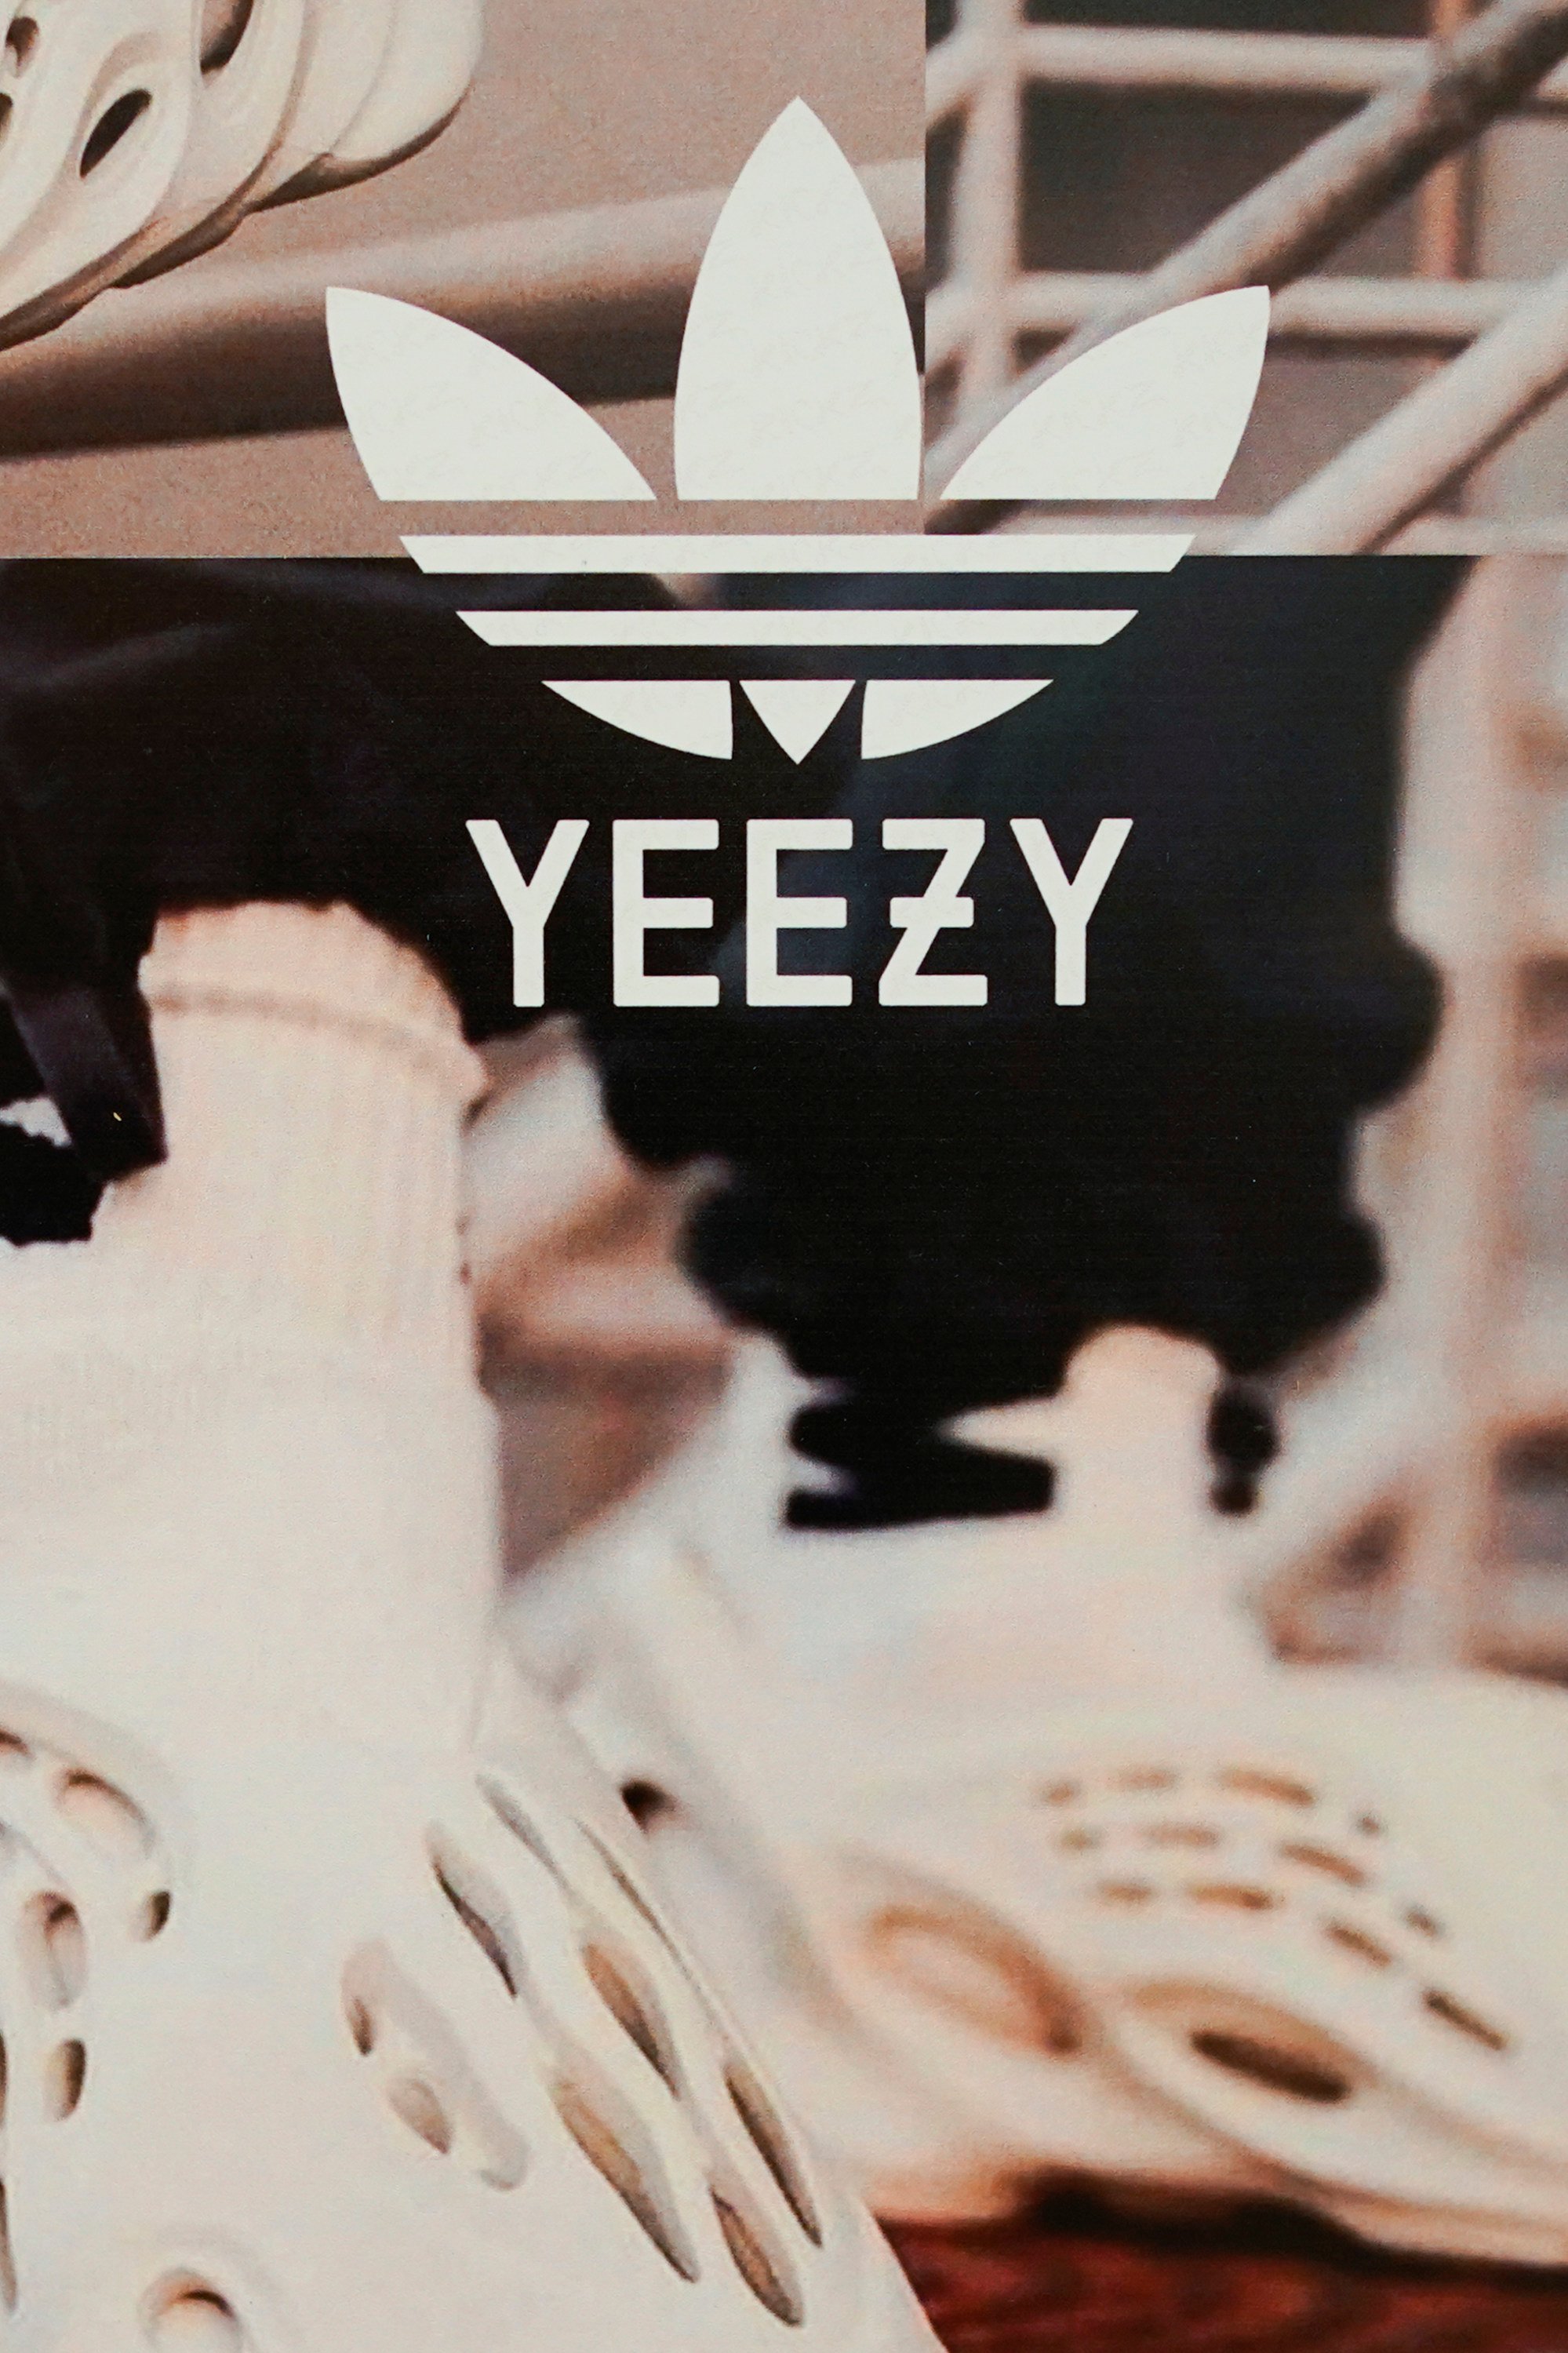 Kanye spotted in unreleased neon green yeezy 350s : r/streetwear